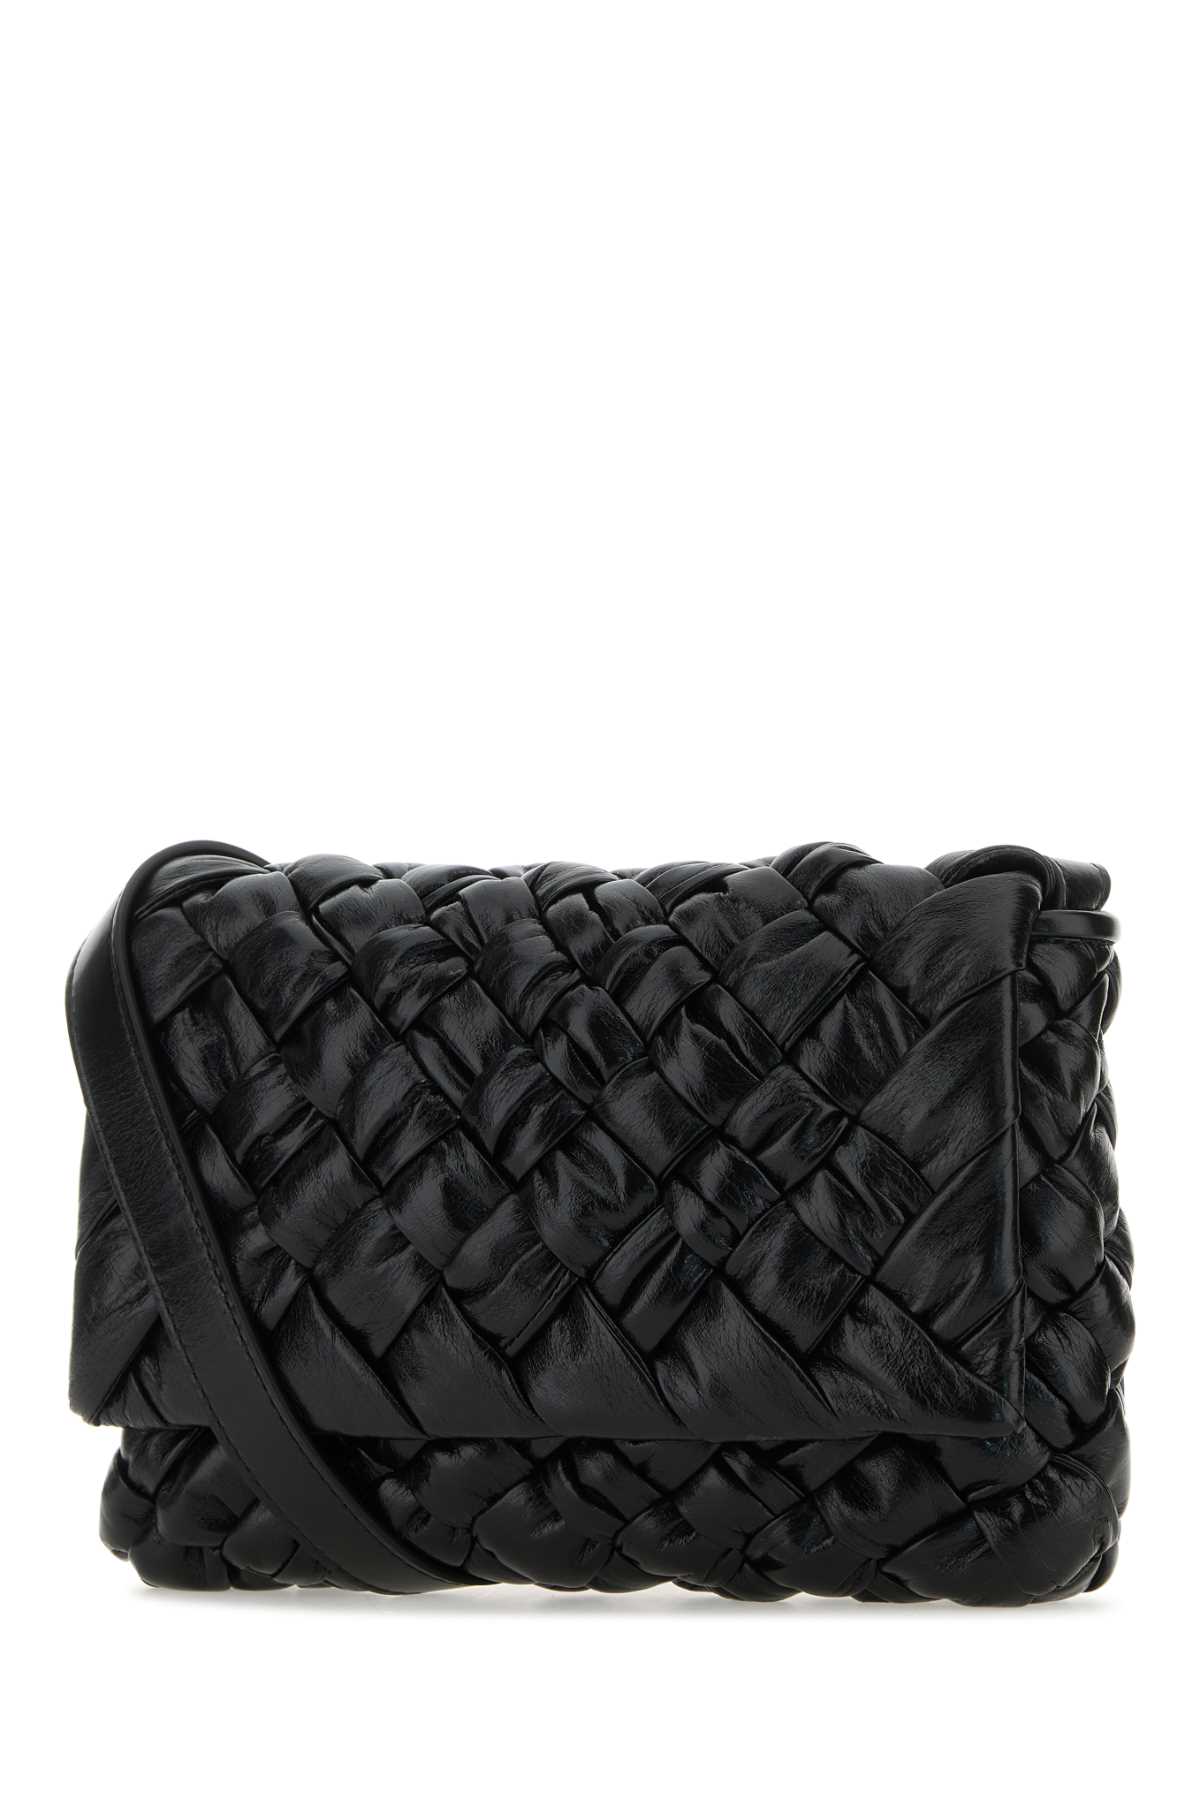 Shop Bottega Veneta Black Leather Crossbody Bag In Blacksilver